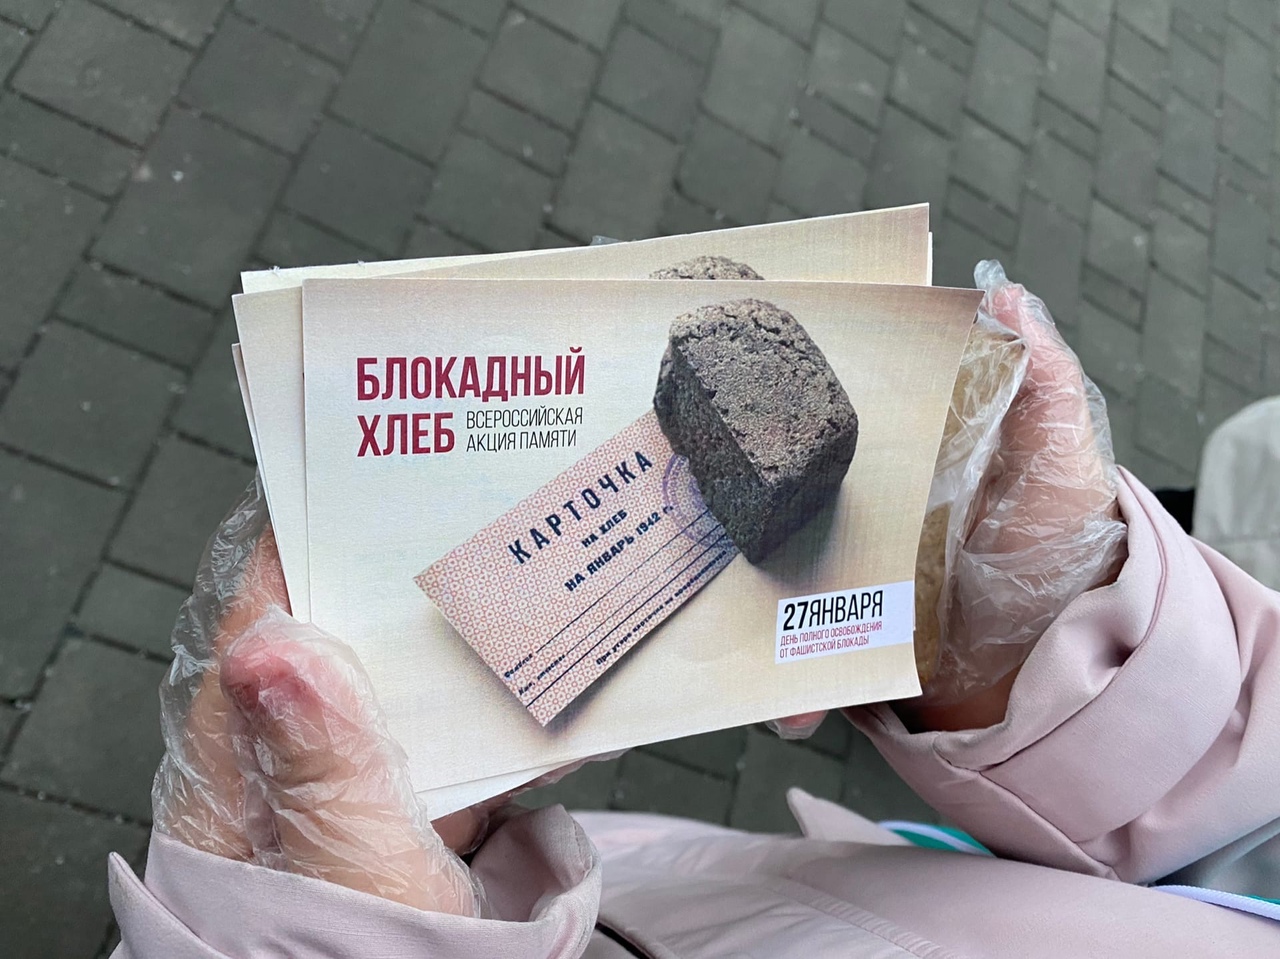 В Туле пройдёт Всероссийская акция памяти «Блокадный хлеб».